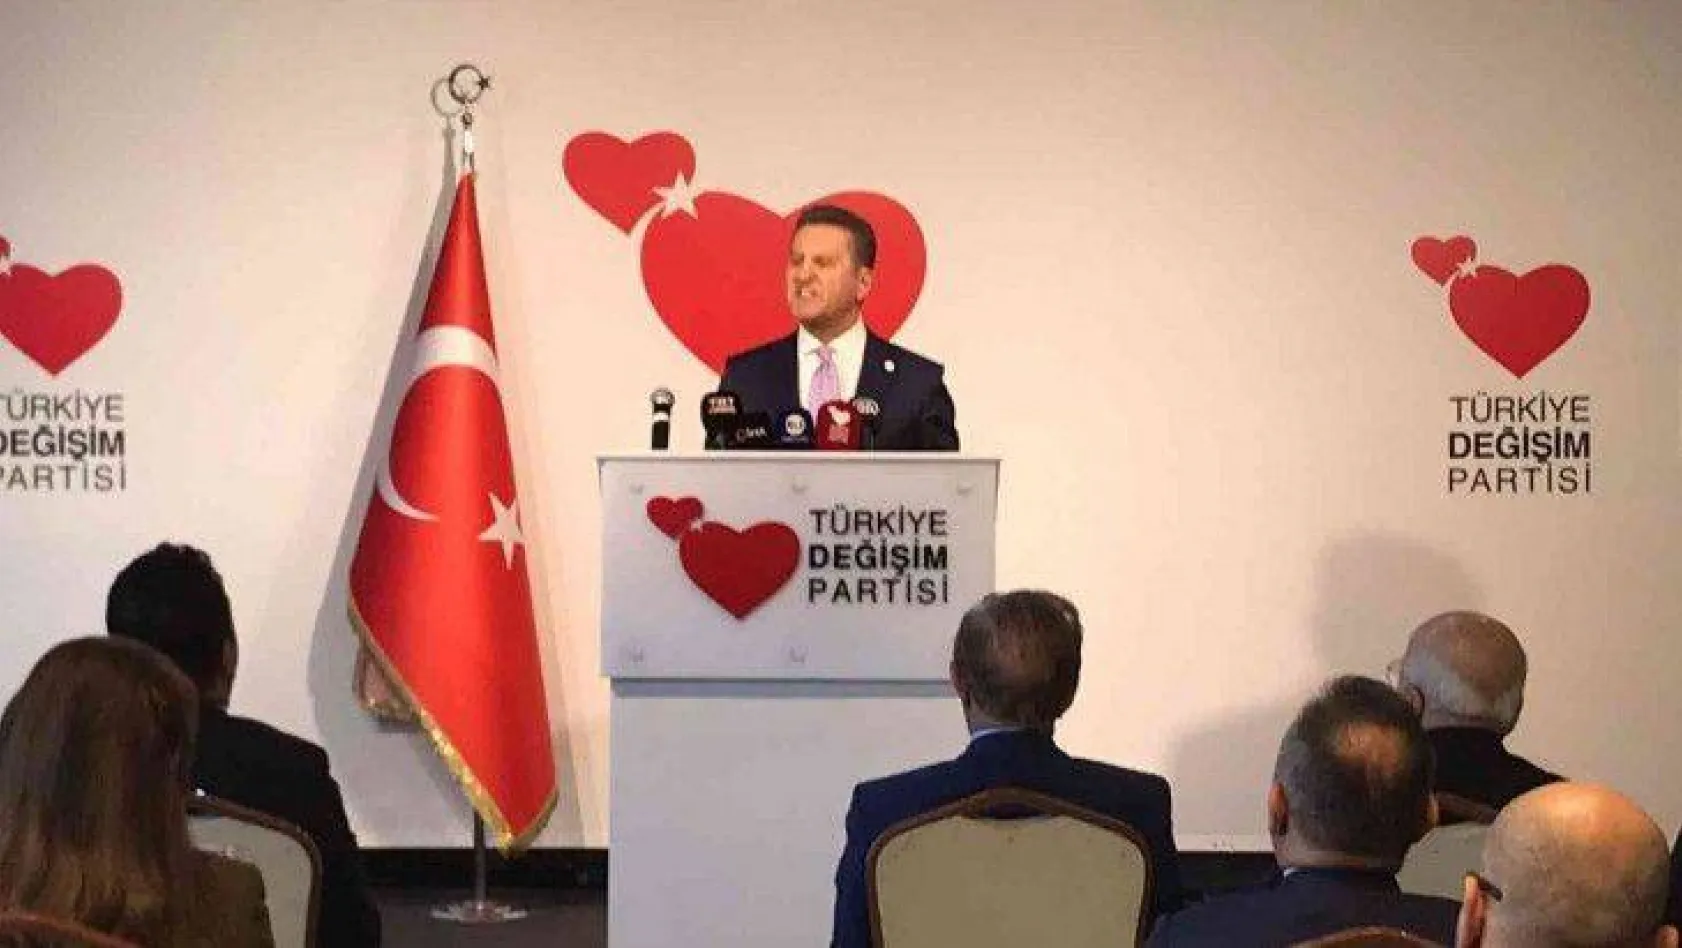 TDP Genel Başkanı Sarıgül: 'Toplumsal barış için af'